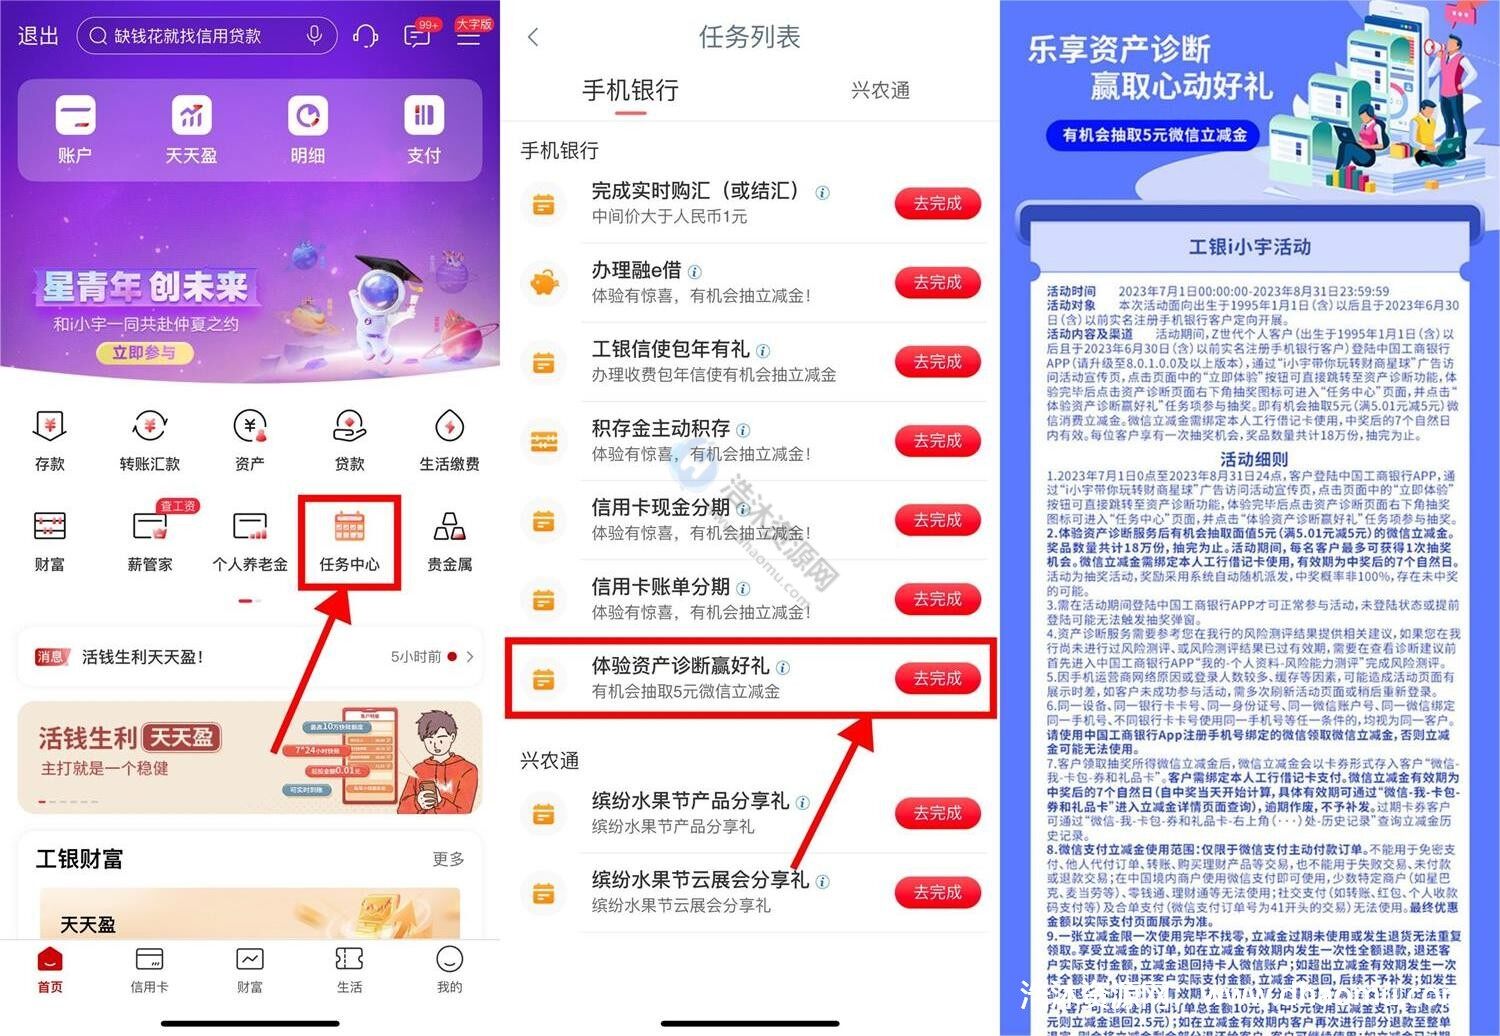 中国工商银行工行资产诊断免费抽取5元微信立减金